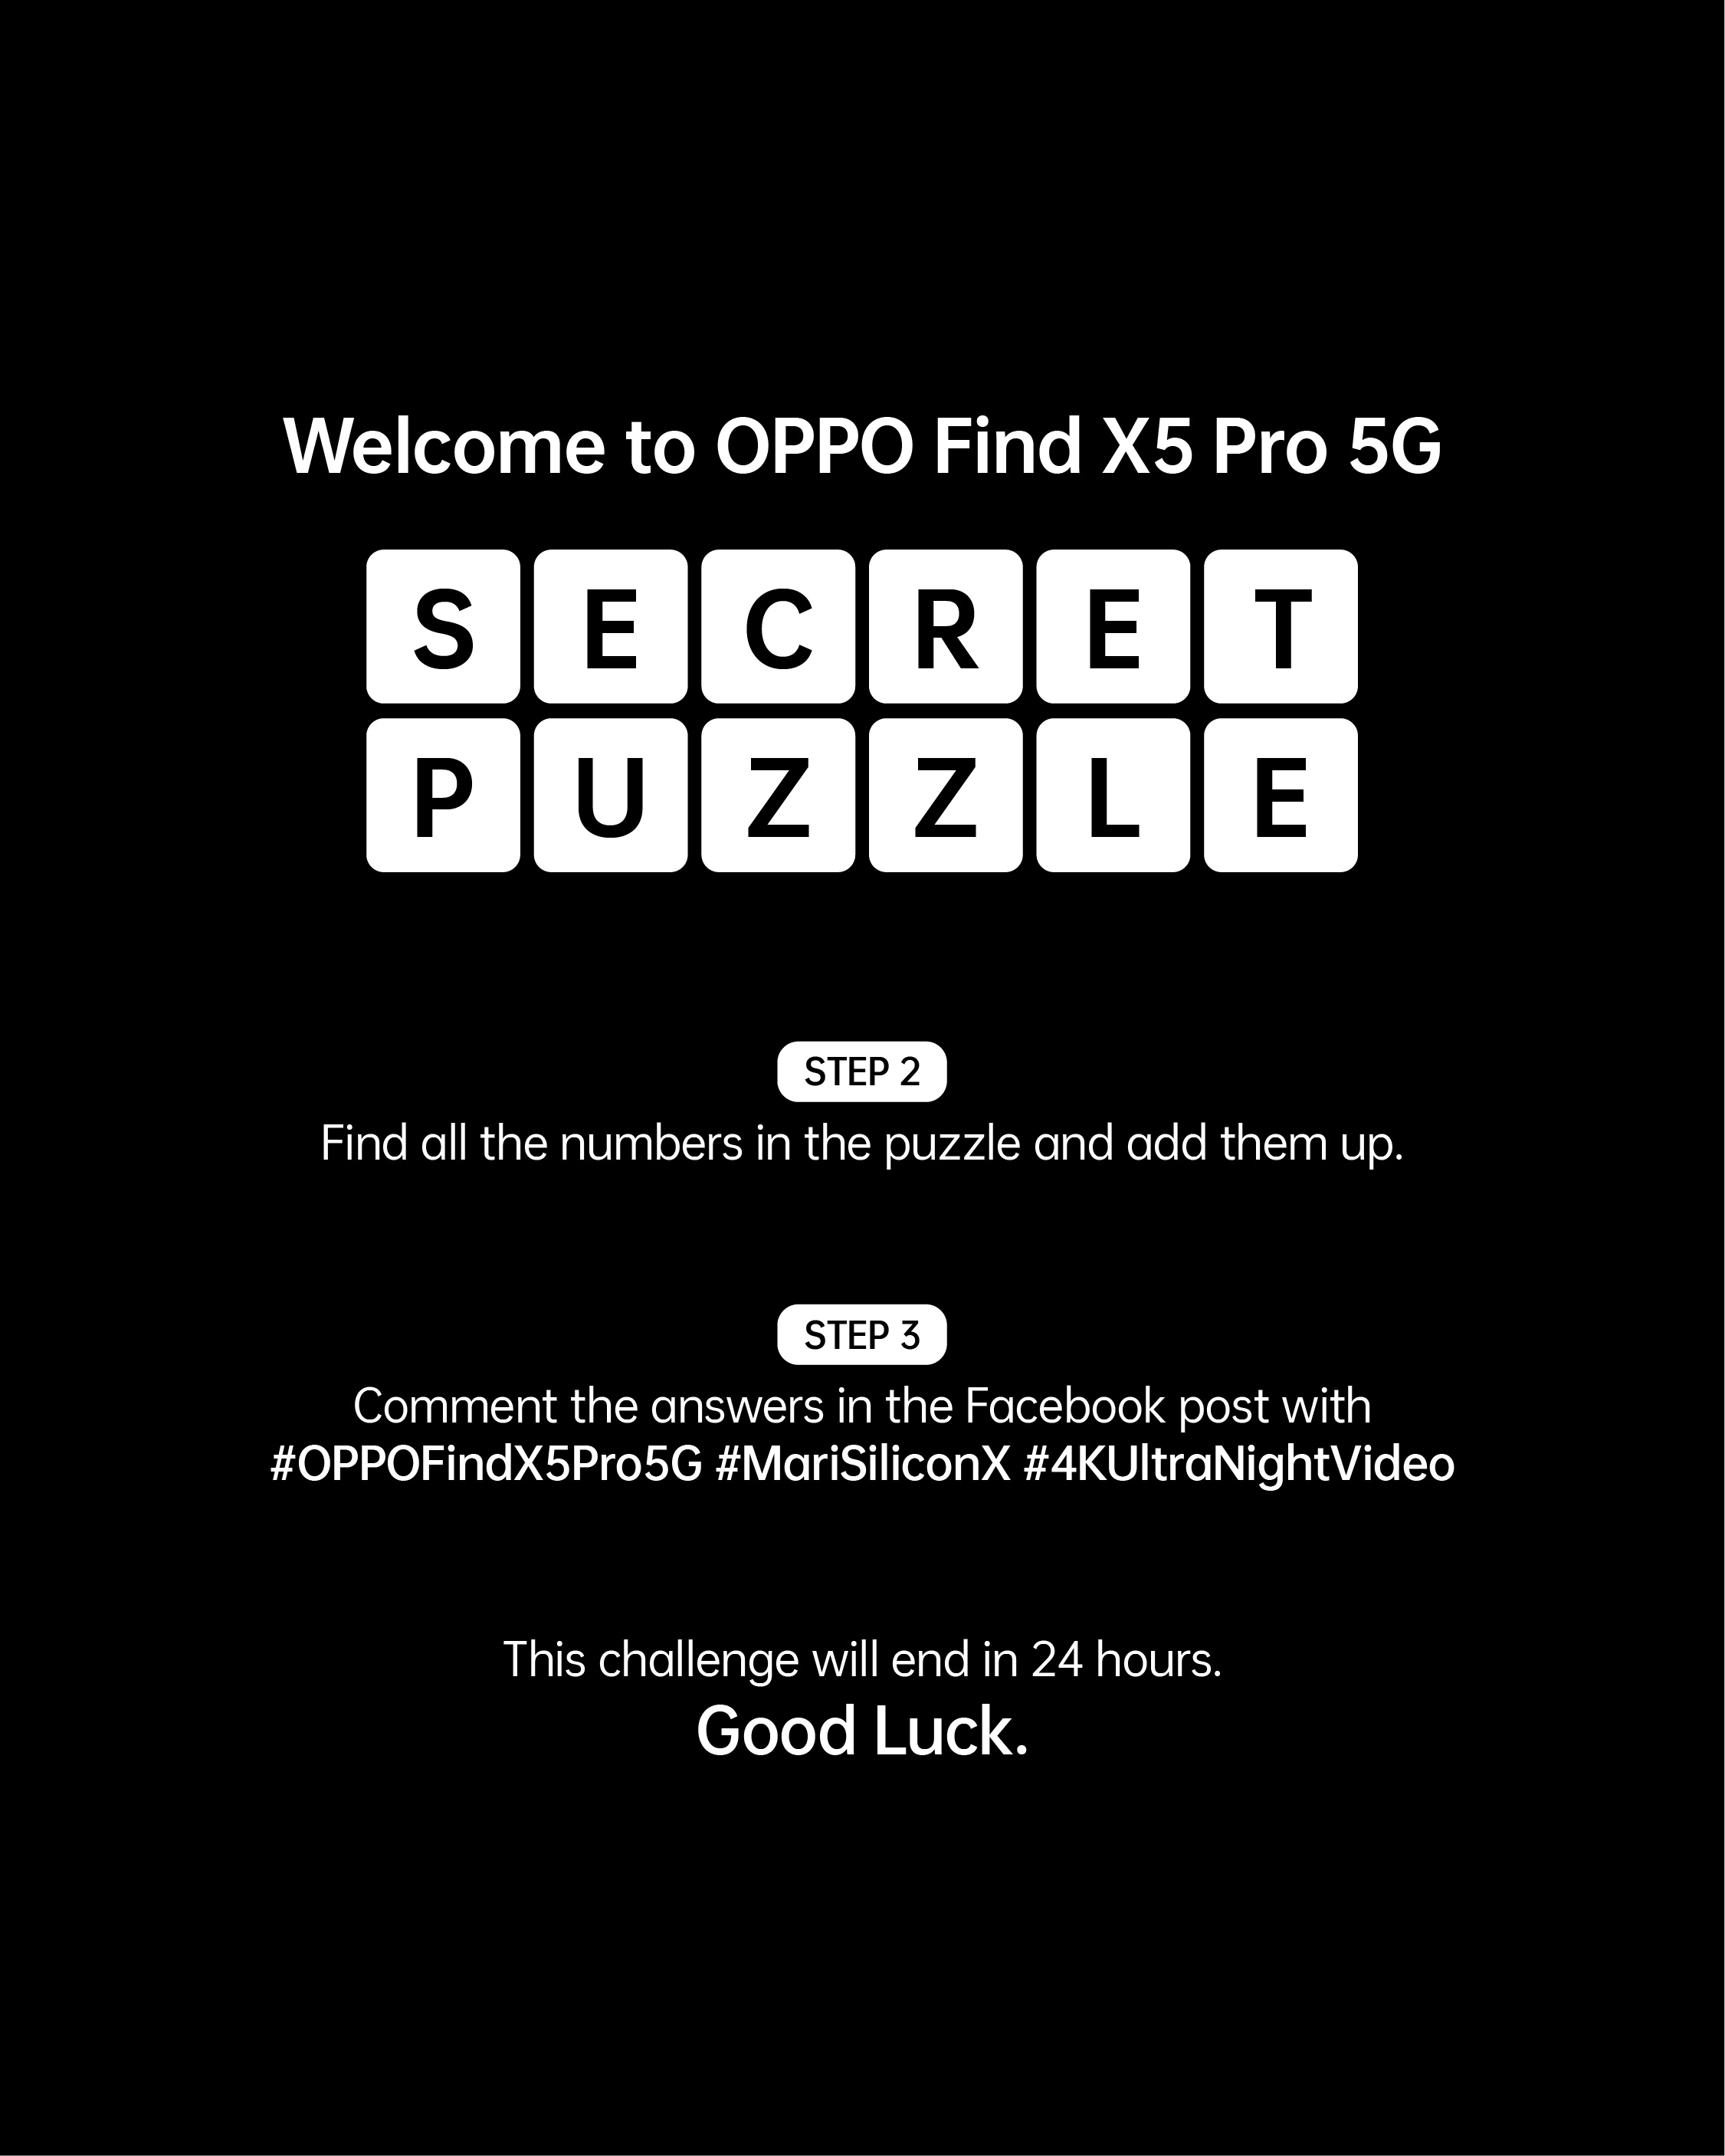 Find X5 Pro 5G secret puzzle intro page